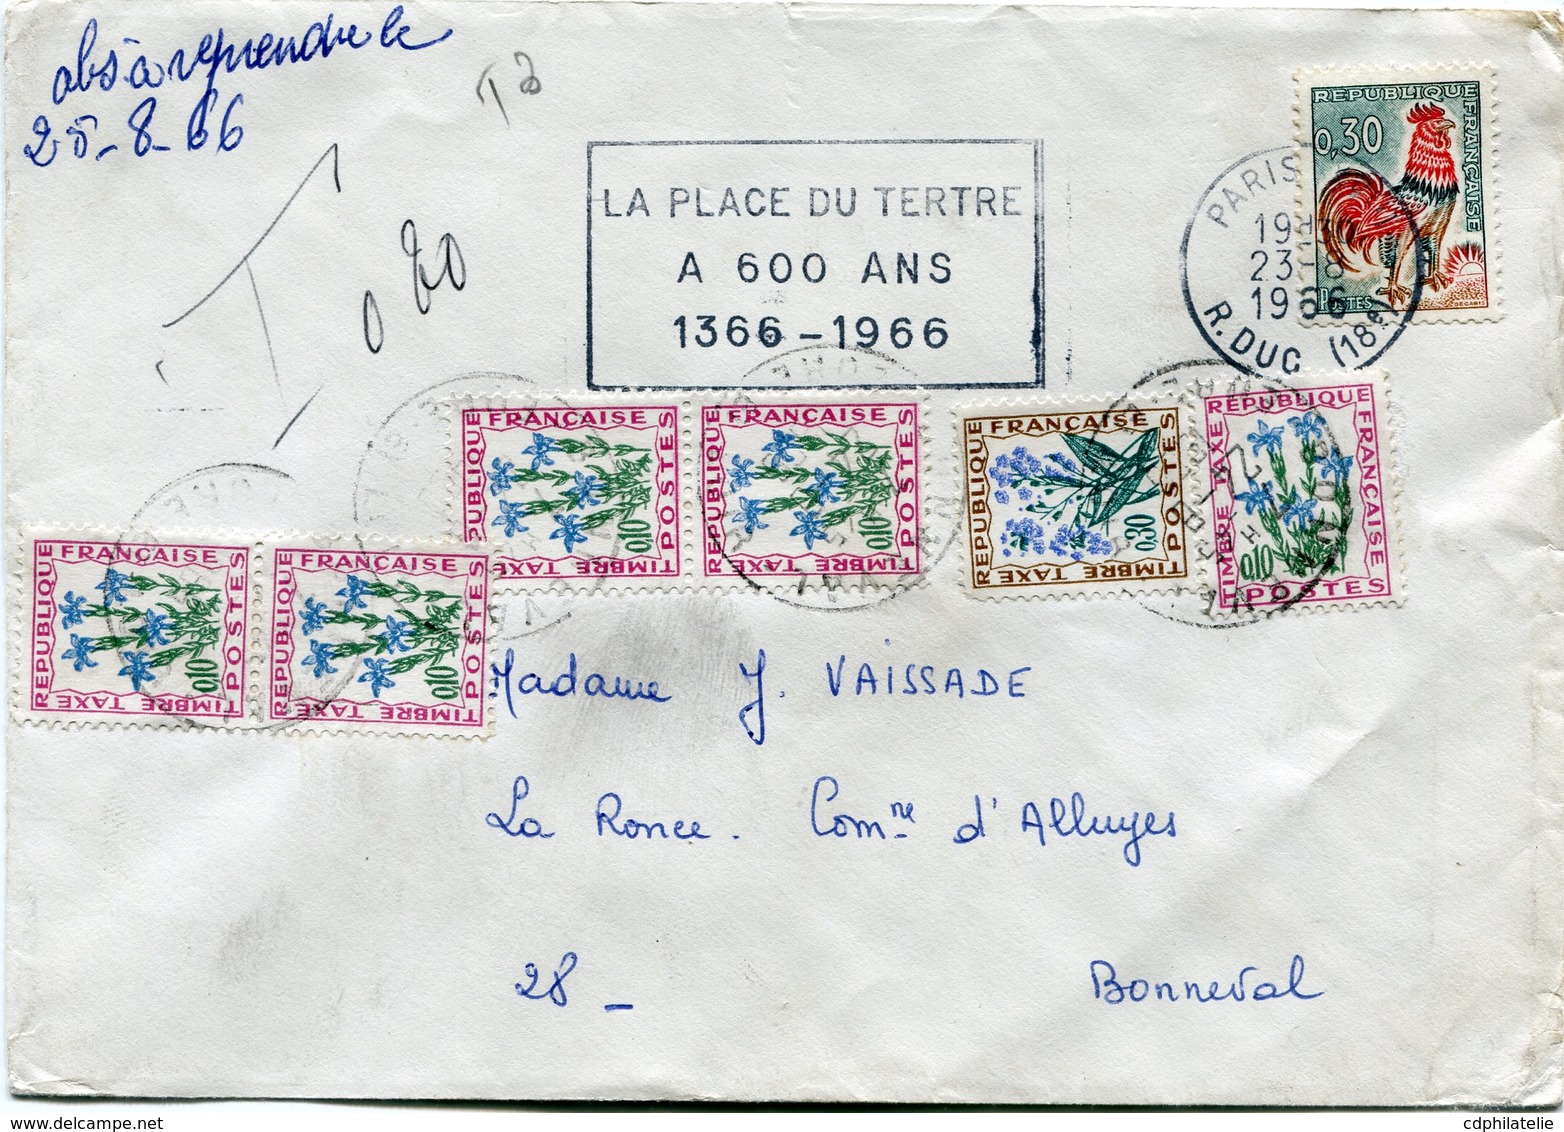 FRANCE LETTRE DEPART PARIS 23-8-1966 R. DUC TAXEE A L'ARRIVEE A BONNEVAL LE 24-8-1966 - 1962-1965 Cock Of Decaris